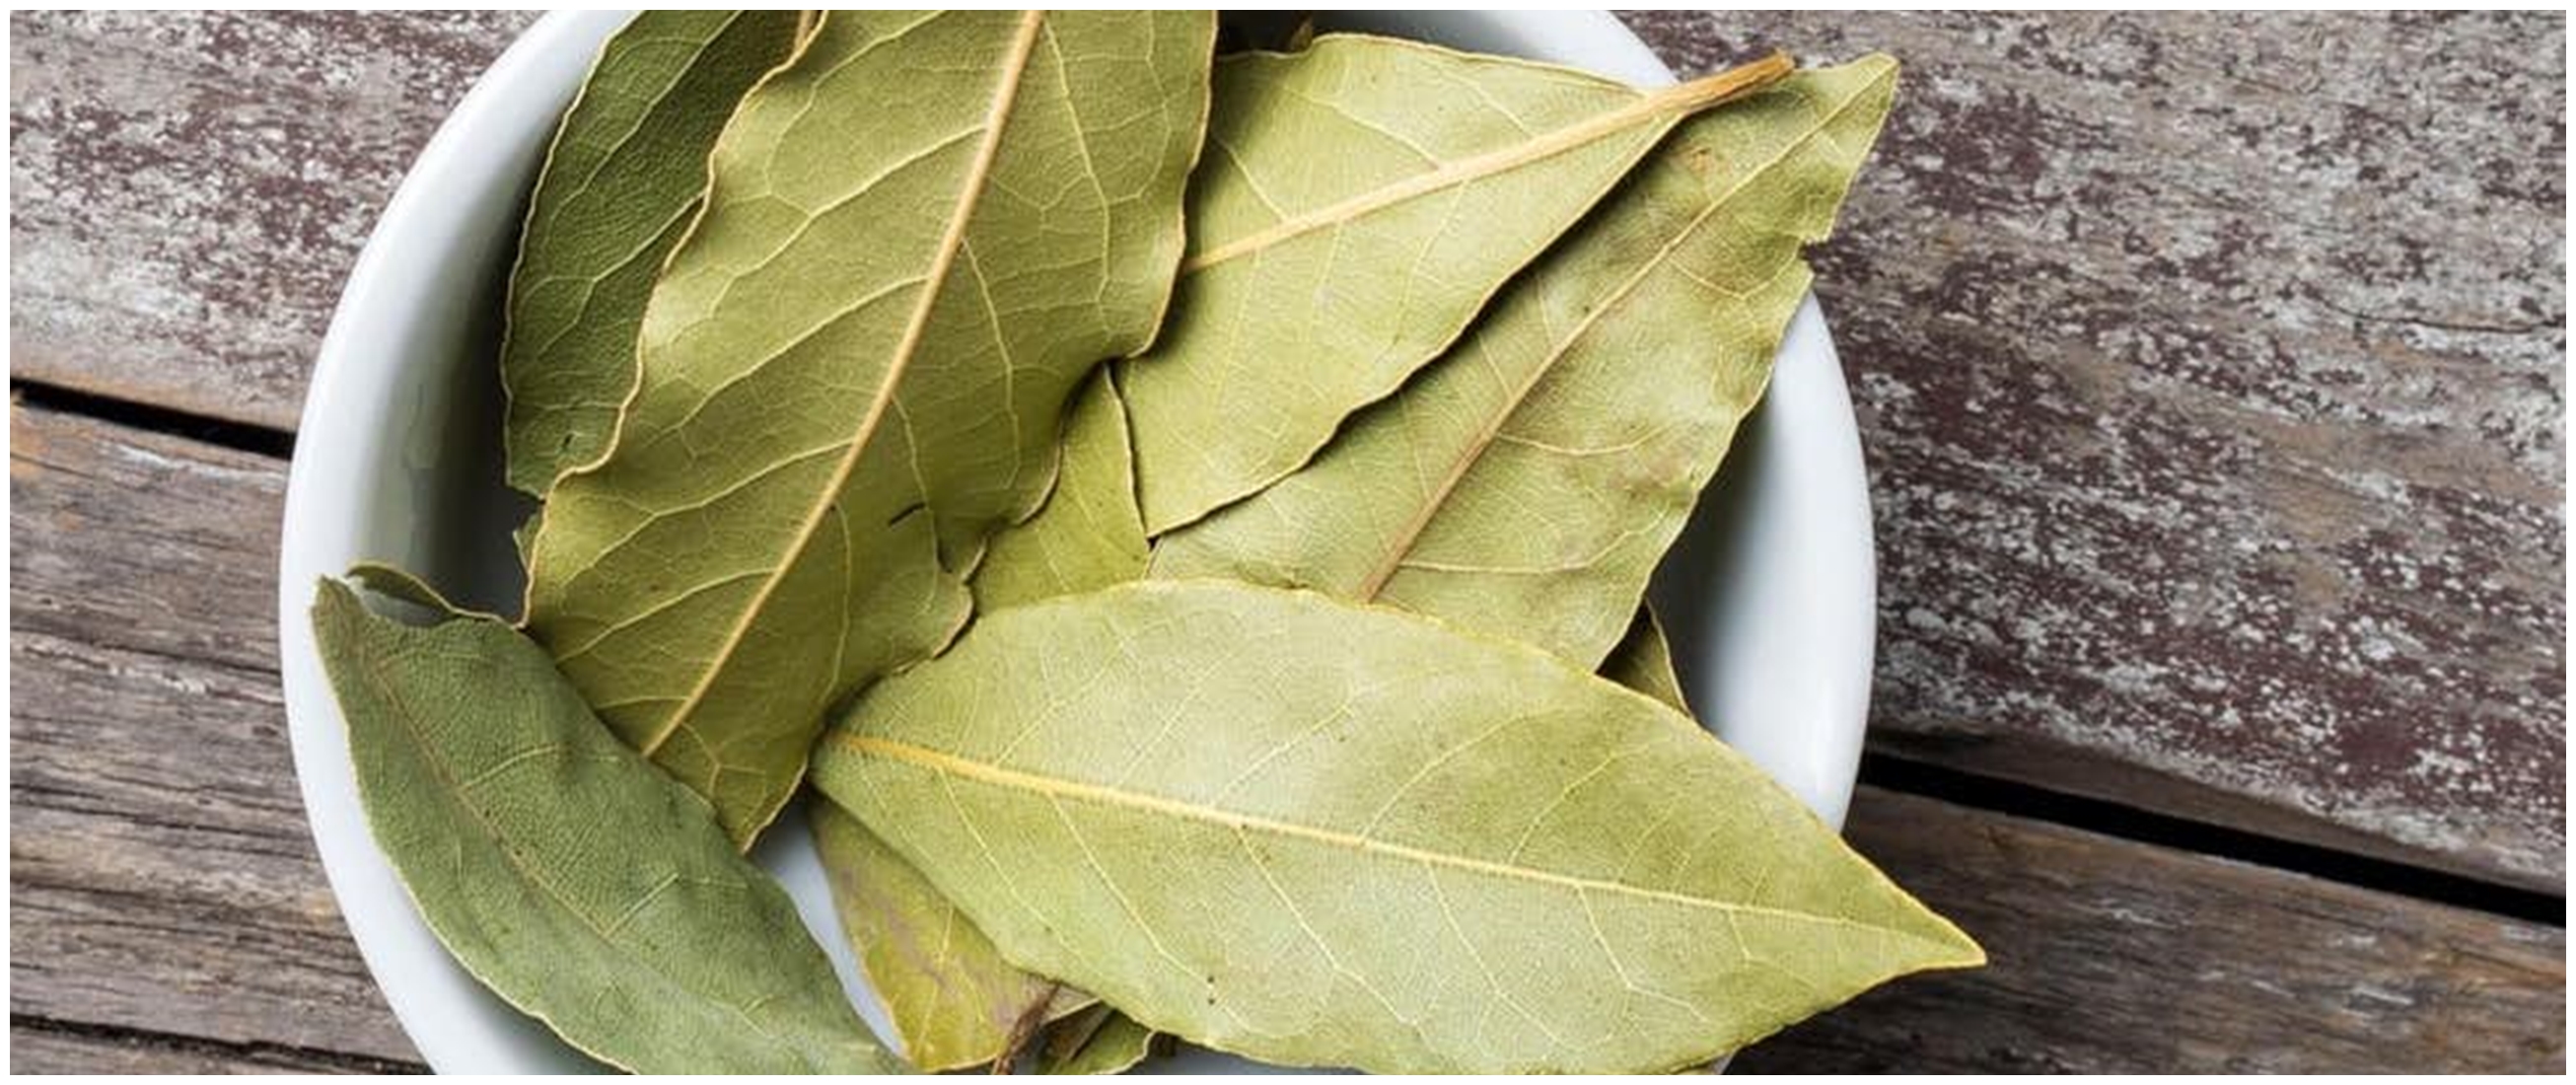 15 Manfaat daun salam untuk kesehatan, mengobati asam urat